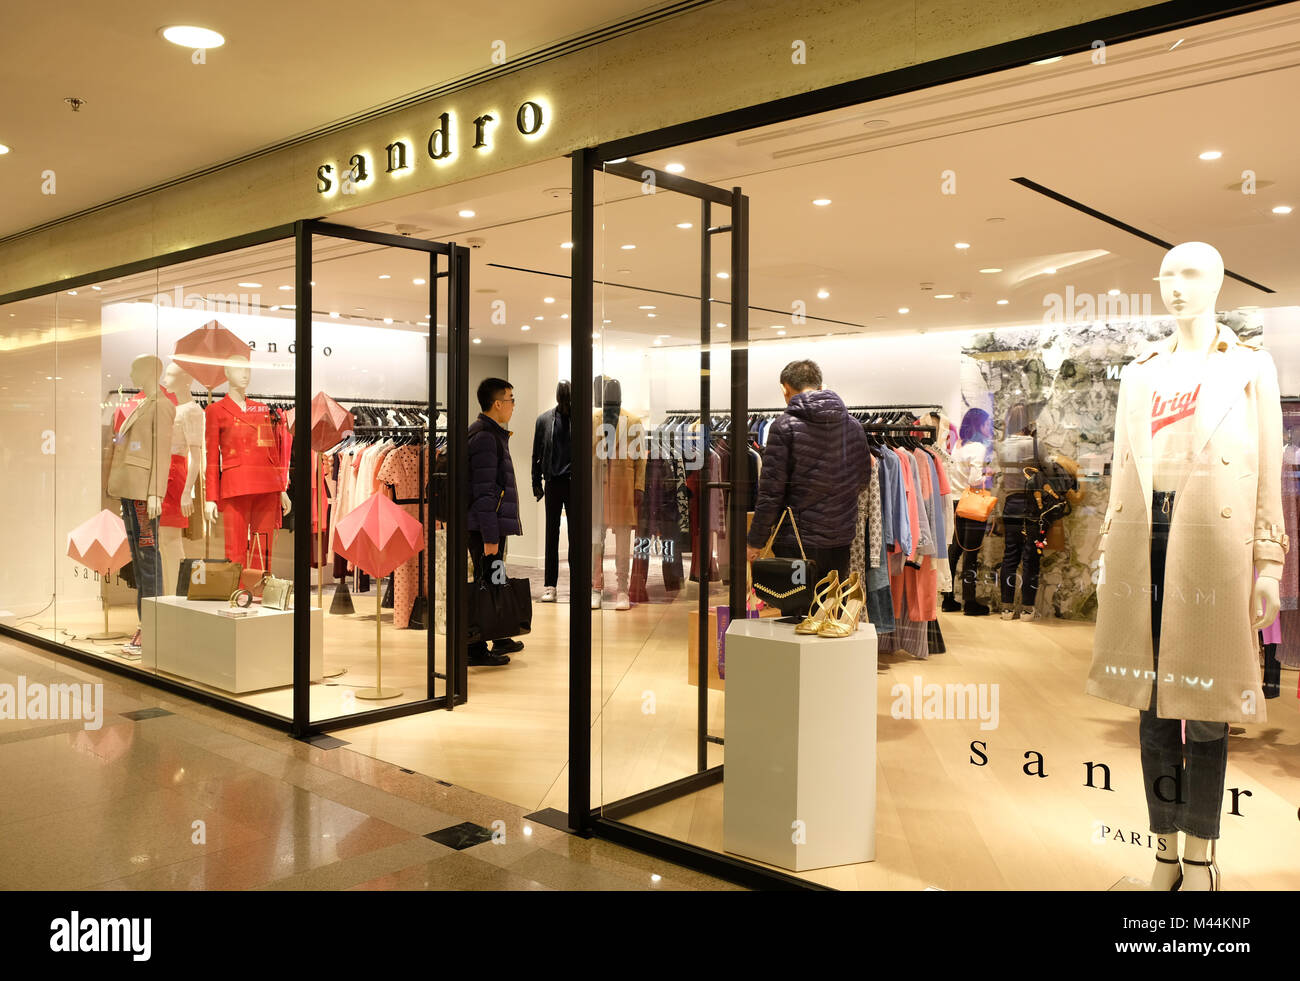 HONG KONG - le 4 février 2018 : Sandro shop à Hong Kong. Sandro est une marque de mode de Paris, France. Banque D'Images